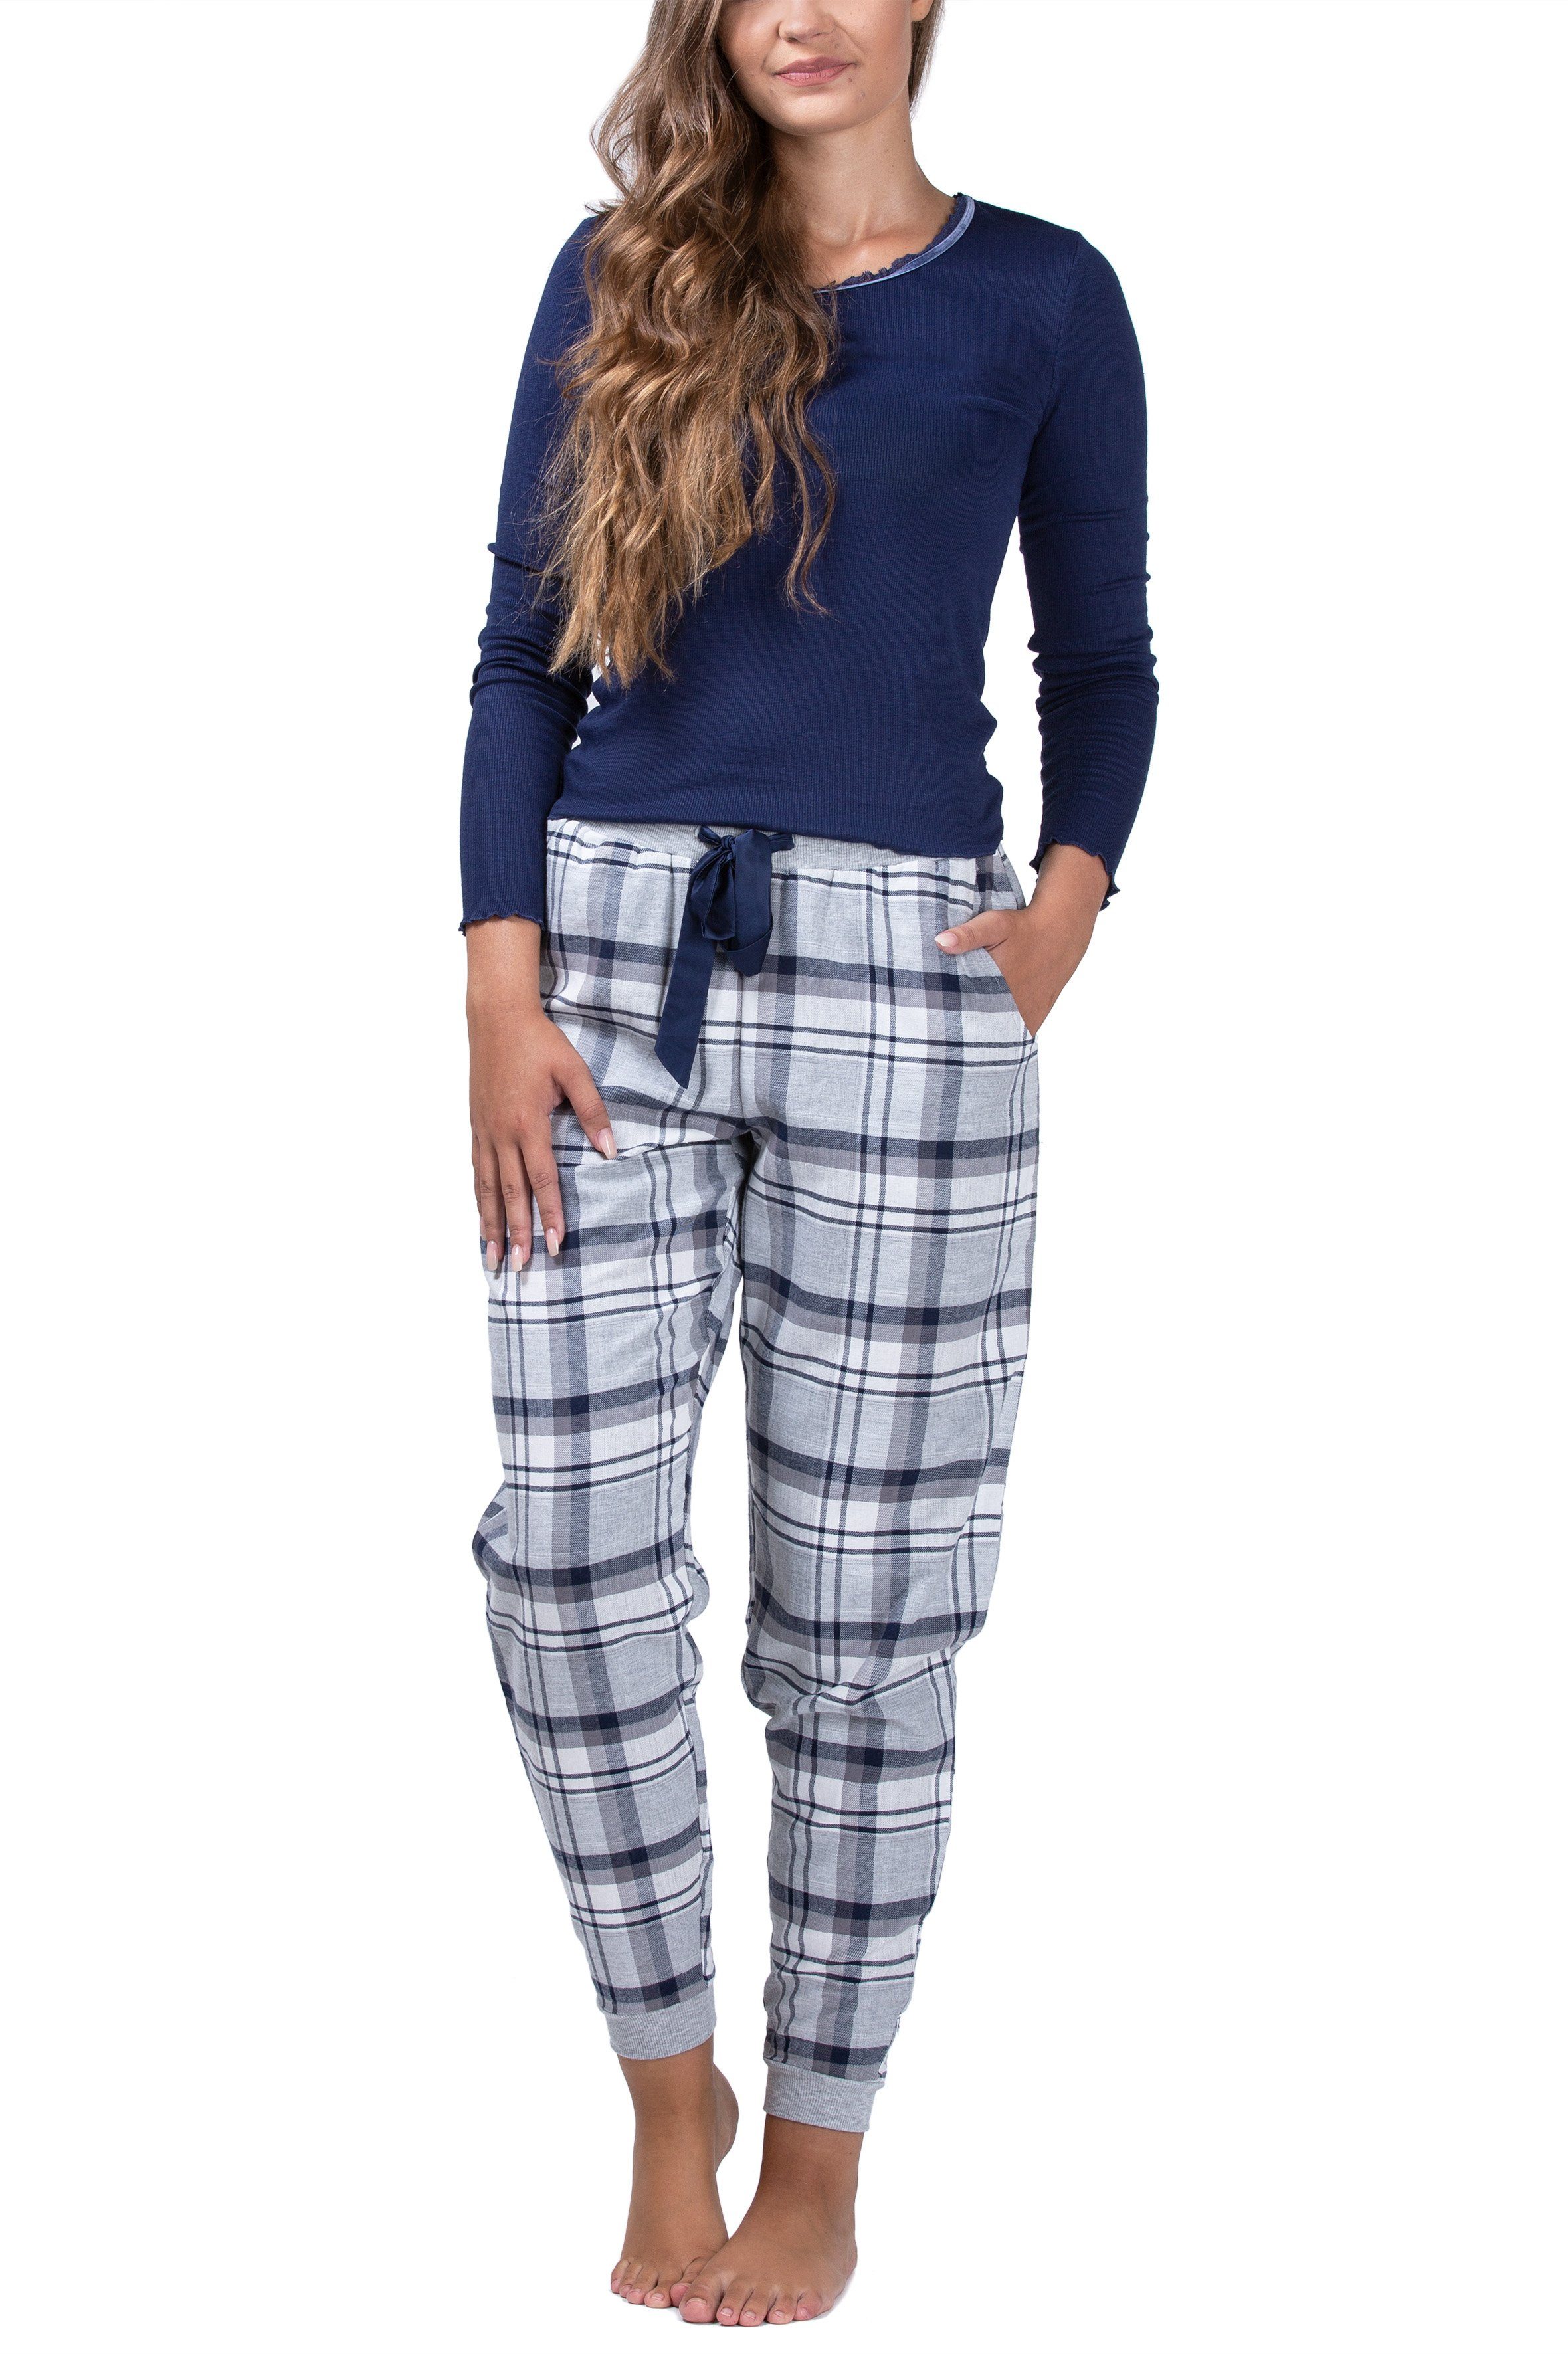 maluuna Pyjama Damen Schlafanzug mit Flanellhose und Bündchen navy | Pyjamas